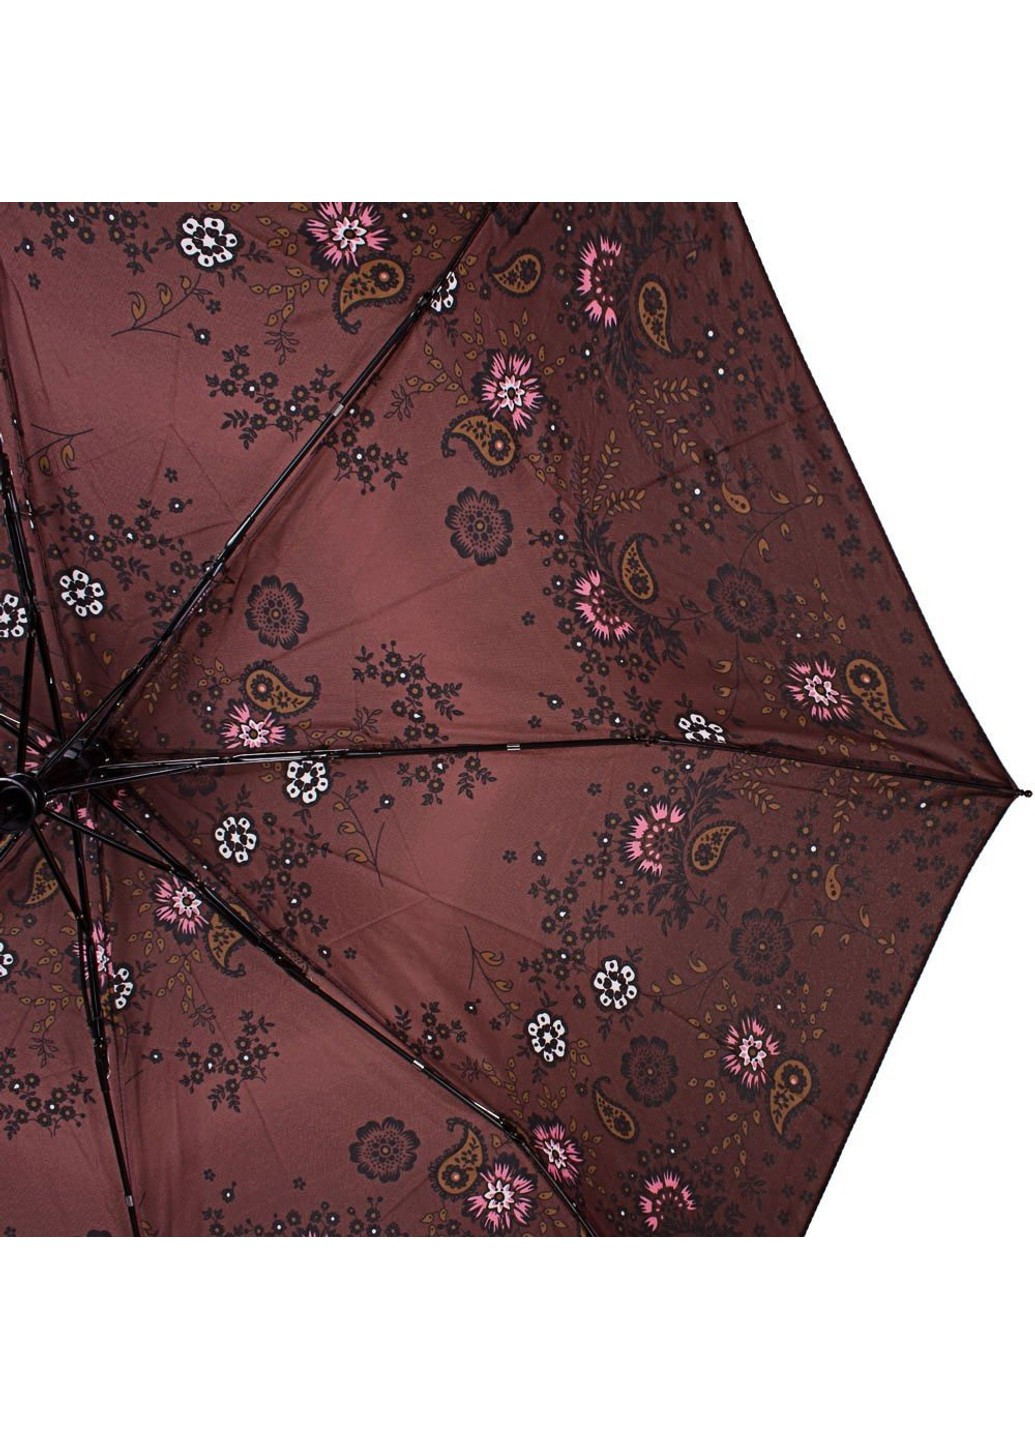 Зонт женский модный полуавтомат коричневый Airton (262975910)